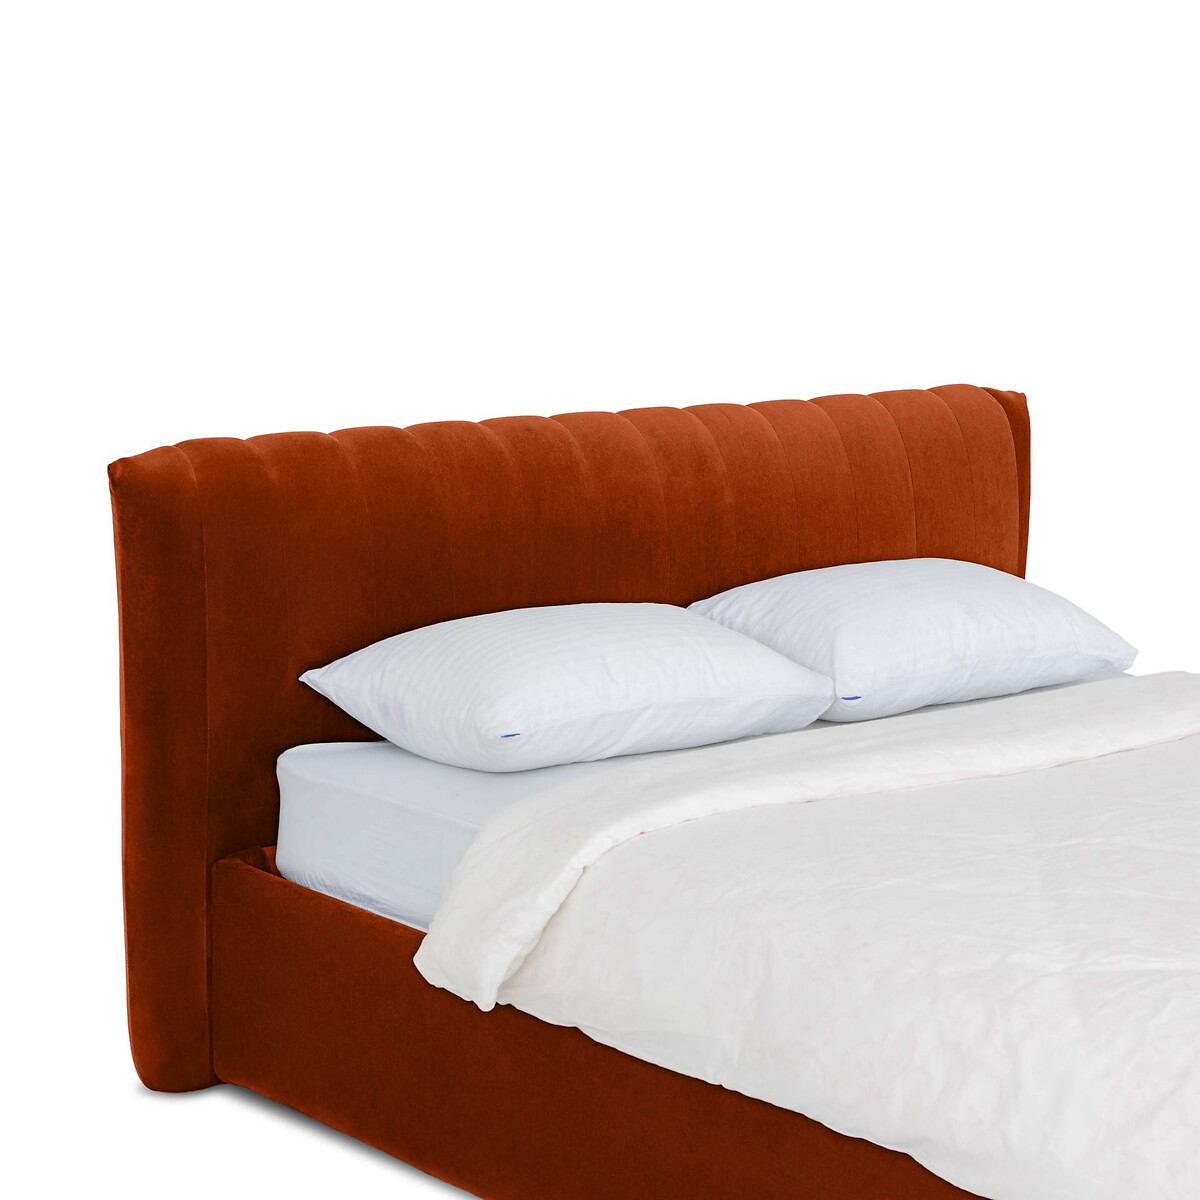 Кровать Queen Anastasia Lux 160 x 200 см оранжевый LaRedoute, размер 160 x 200 см - фото 4